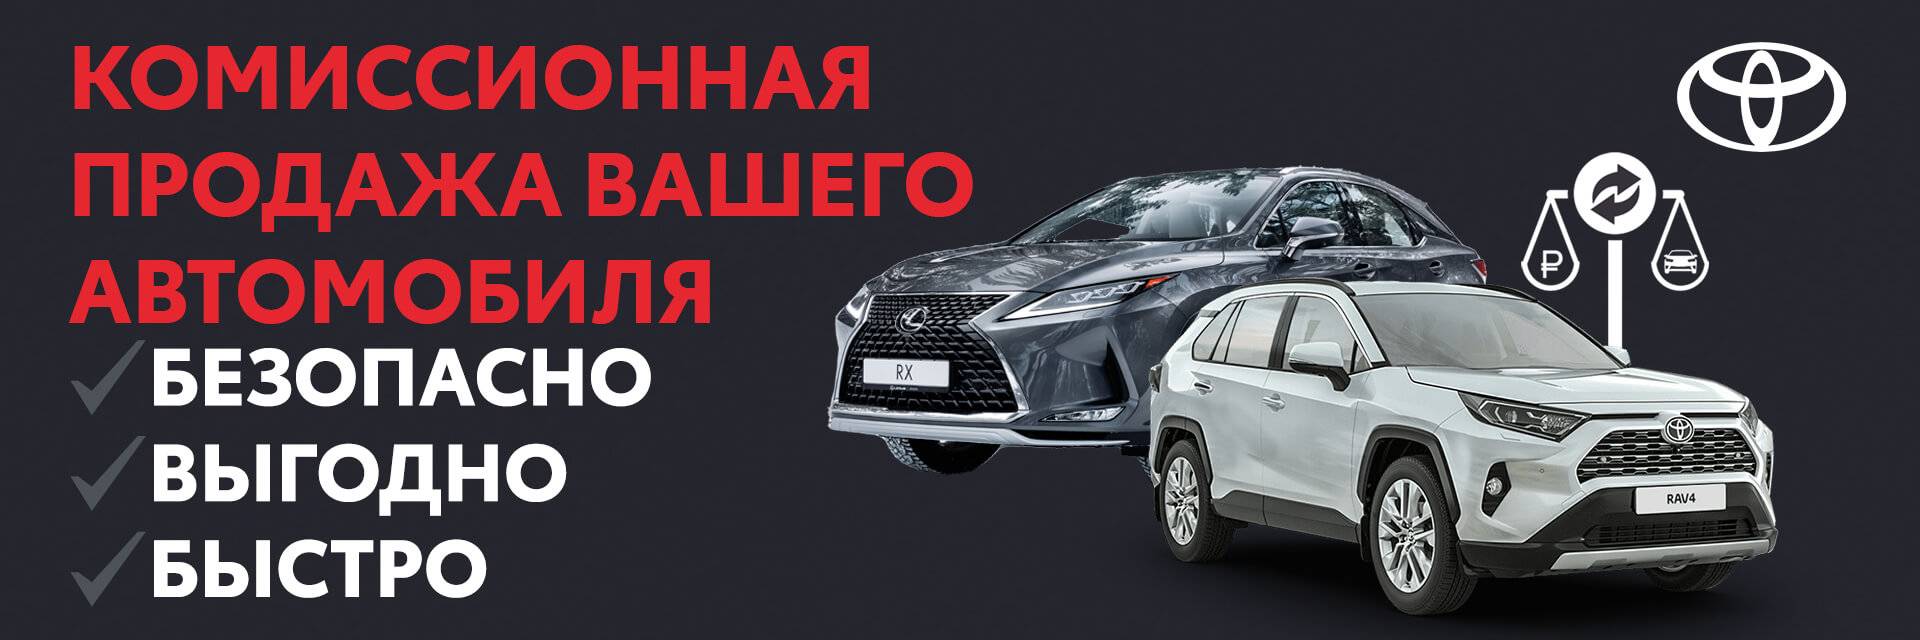 Комиссионная продажа авто в Тойота Центр Томск